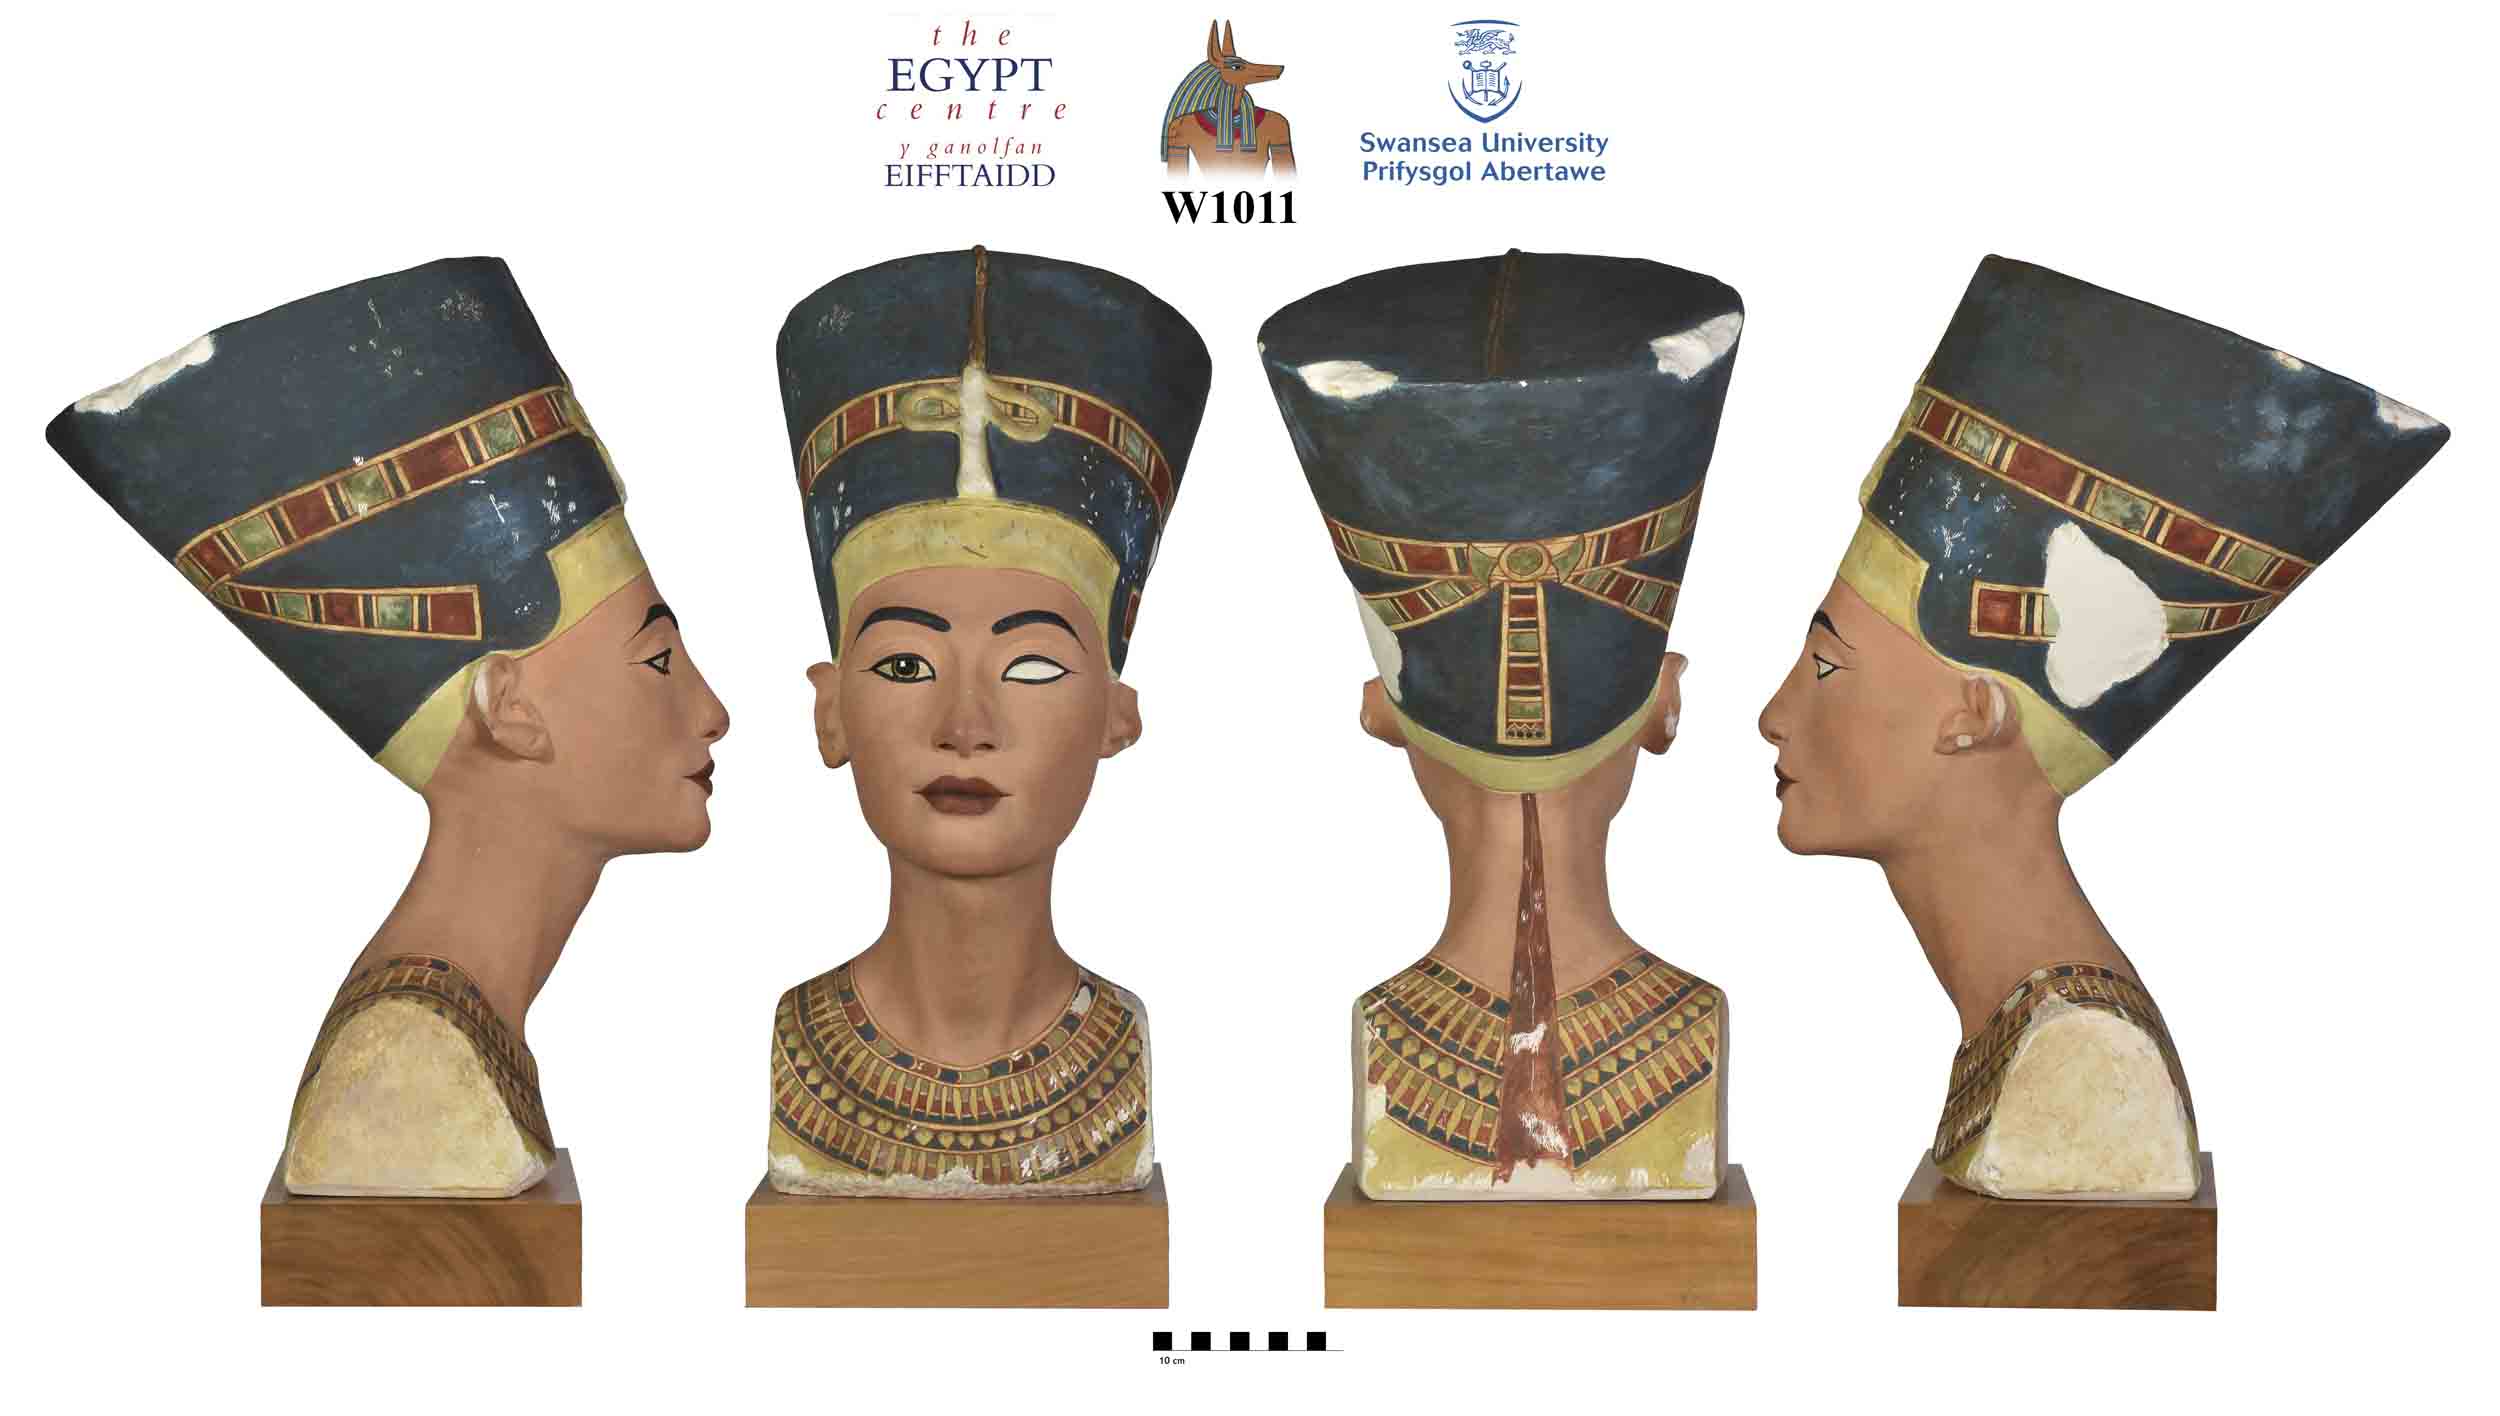 Image for: Plaster cast of Nefertiti